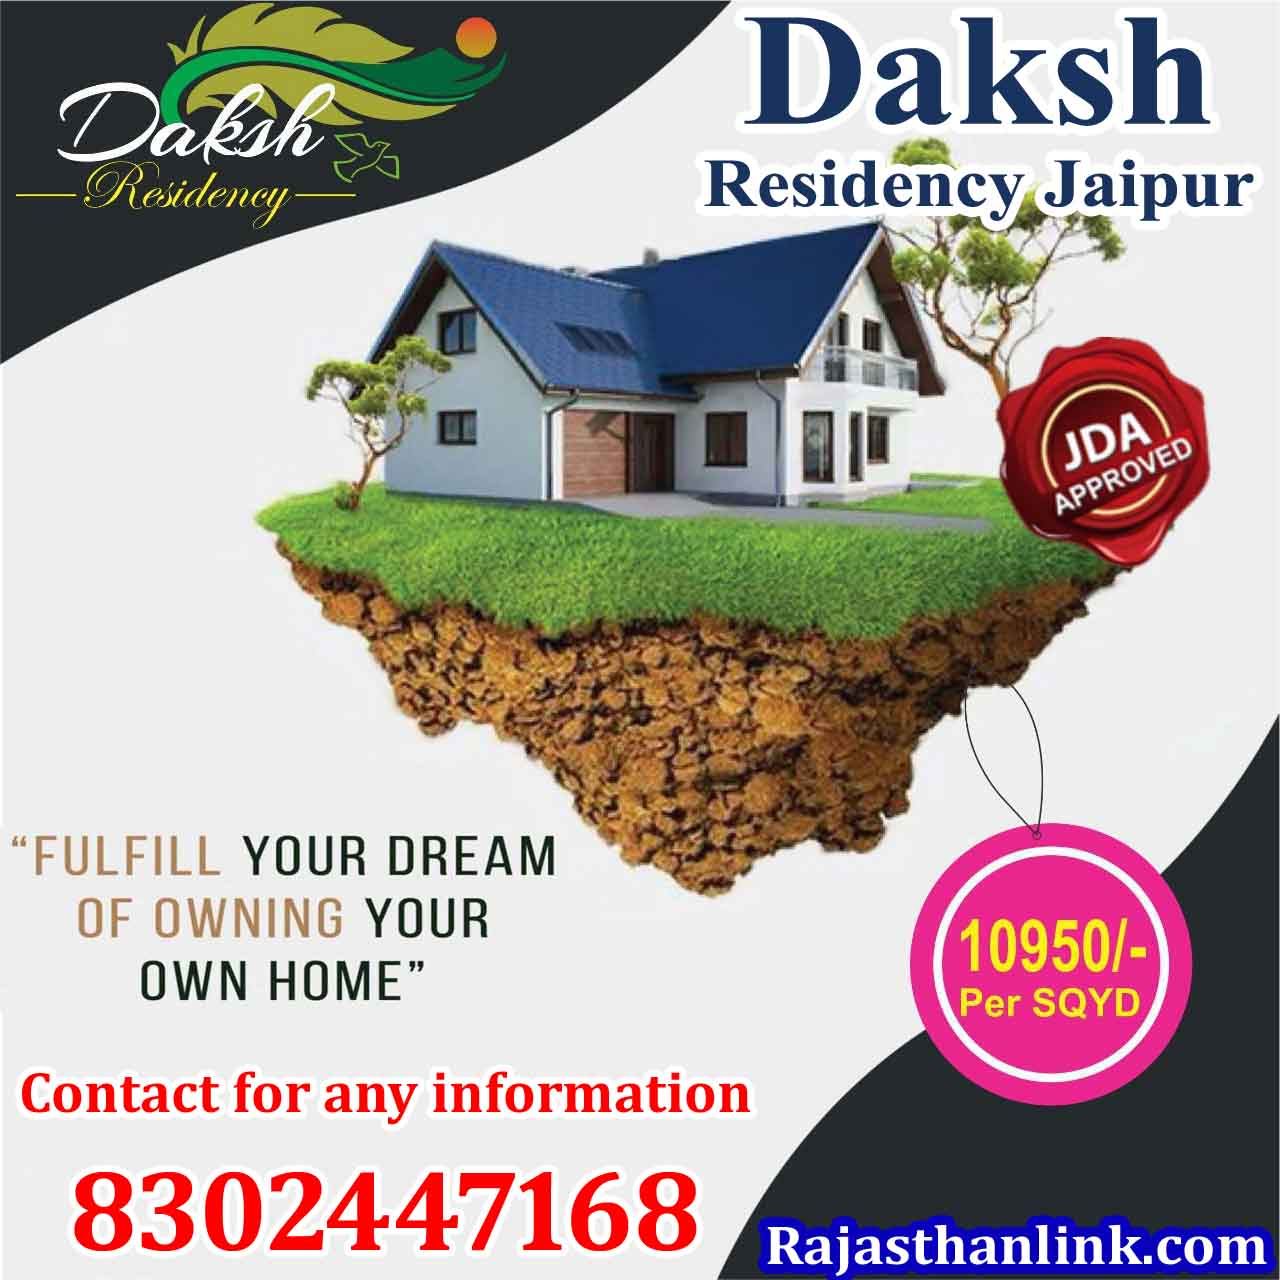 Daksh Residency, Jaipur (Rajasthan)